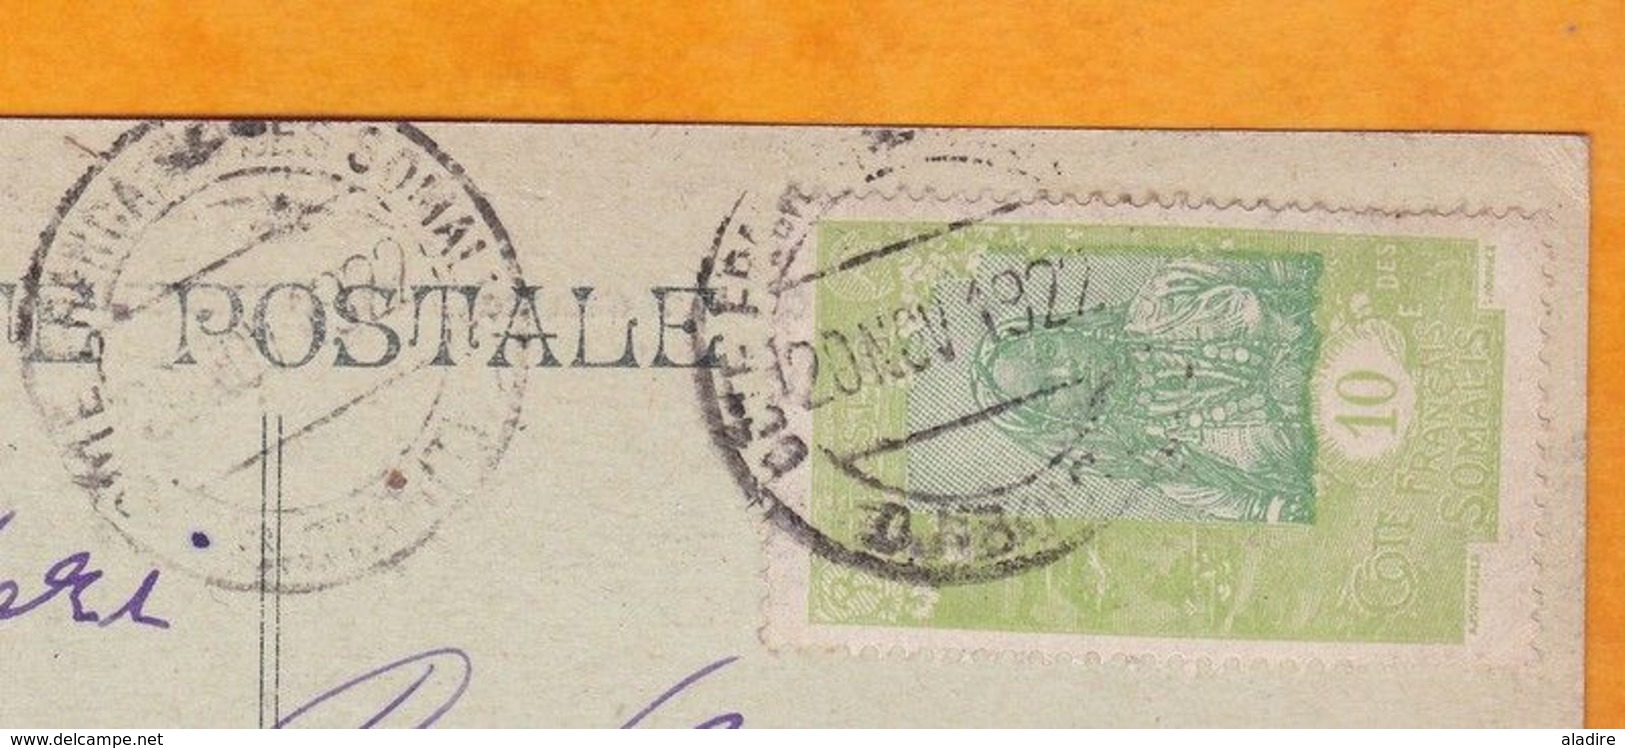 1922 - CP De Djibouti, CFS Vers Lyon, France - Affranchissement 10 C  - Vue Place Ménélik - Brieven En Documenten